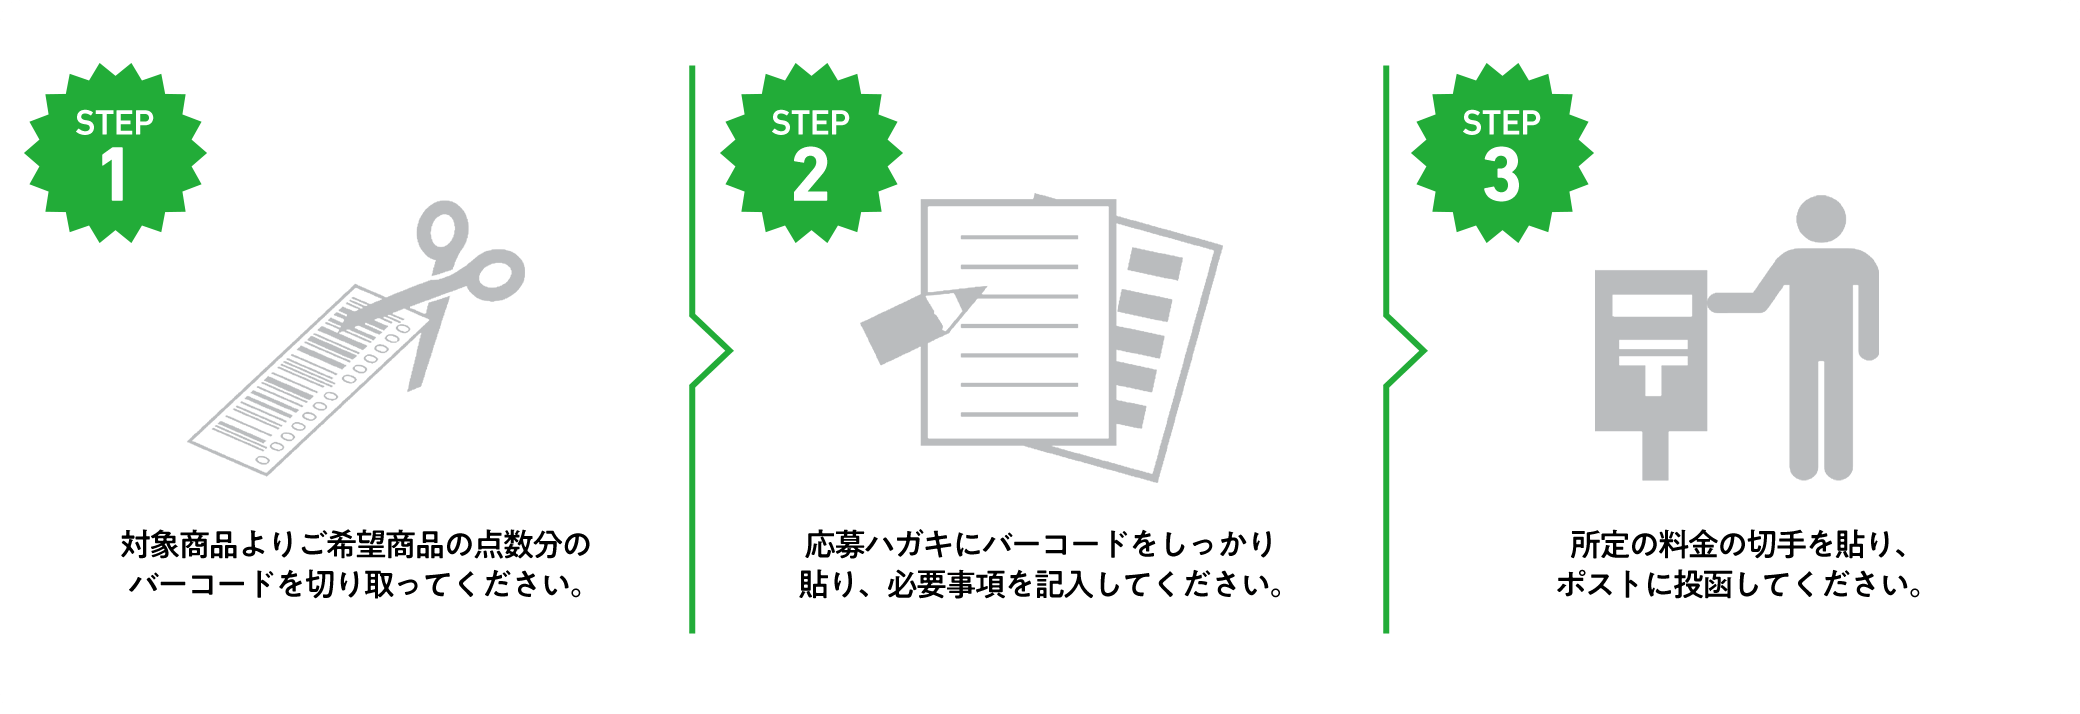 STEP1.対象商品よりご希望の点数分のバーコードを切り取ってください。 STEP2.応募ハガキにバーコードをしっかり貼り、必要事項を記入してください。 STEP3.所定の料金の切手を貼り、ポストに投函してください。